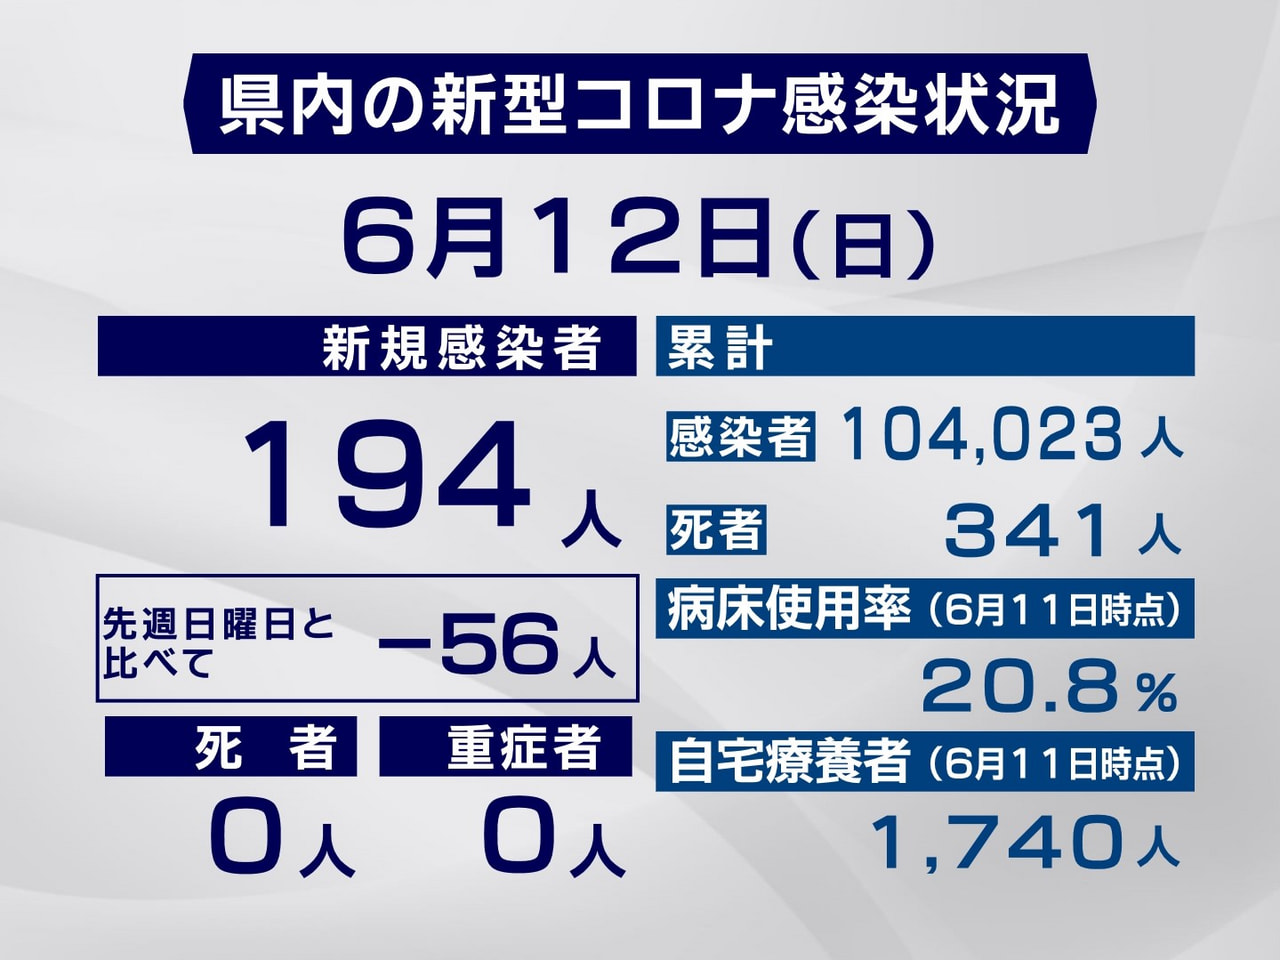 岐阜県は１２日、新型コロナウイルスの新規感染者が１９４人確認されたと発表しました...